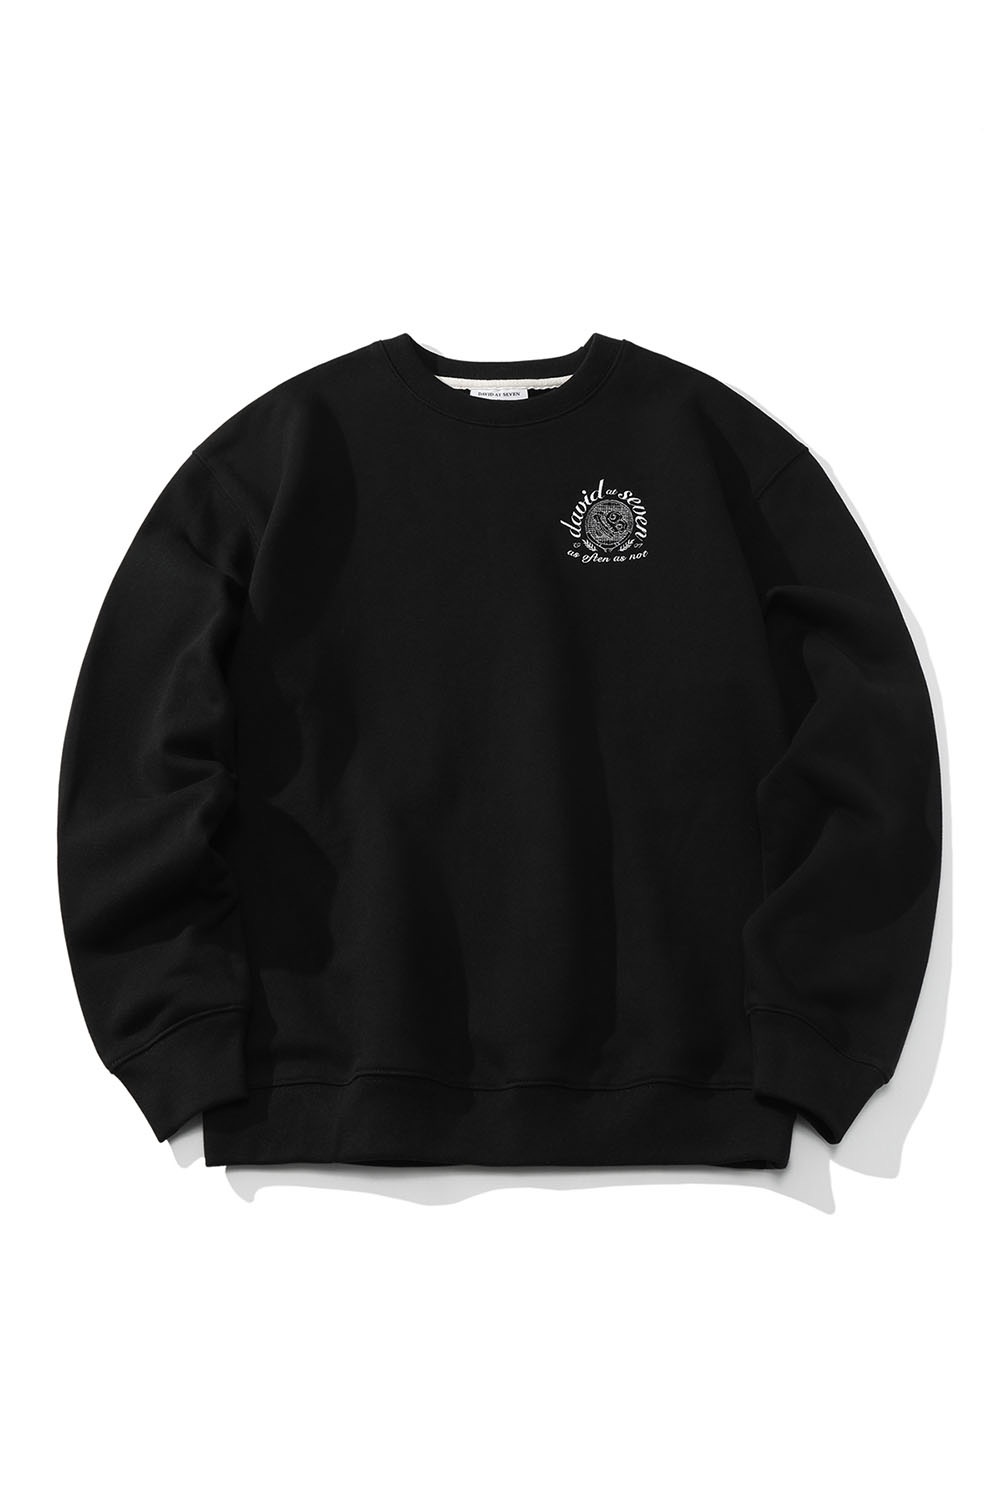 sunny-side up racket sweatshirts (black) RICHEZ